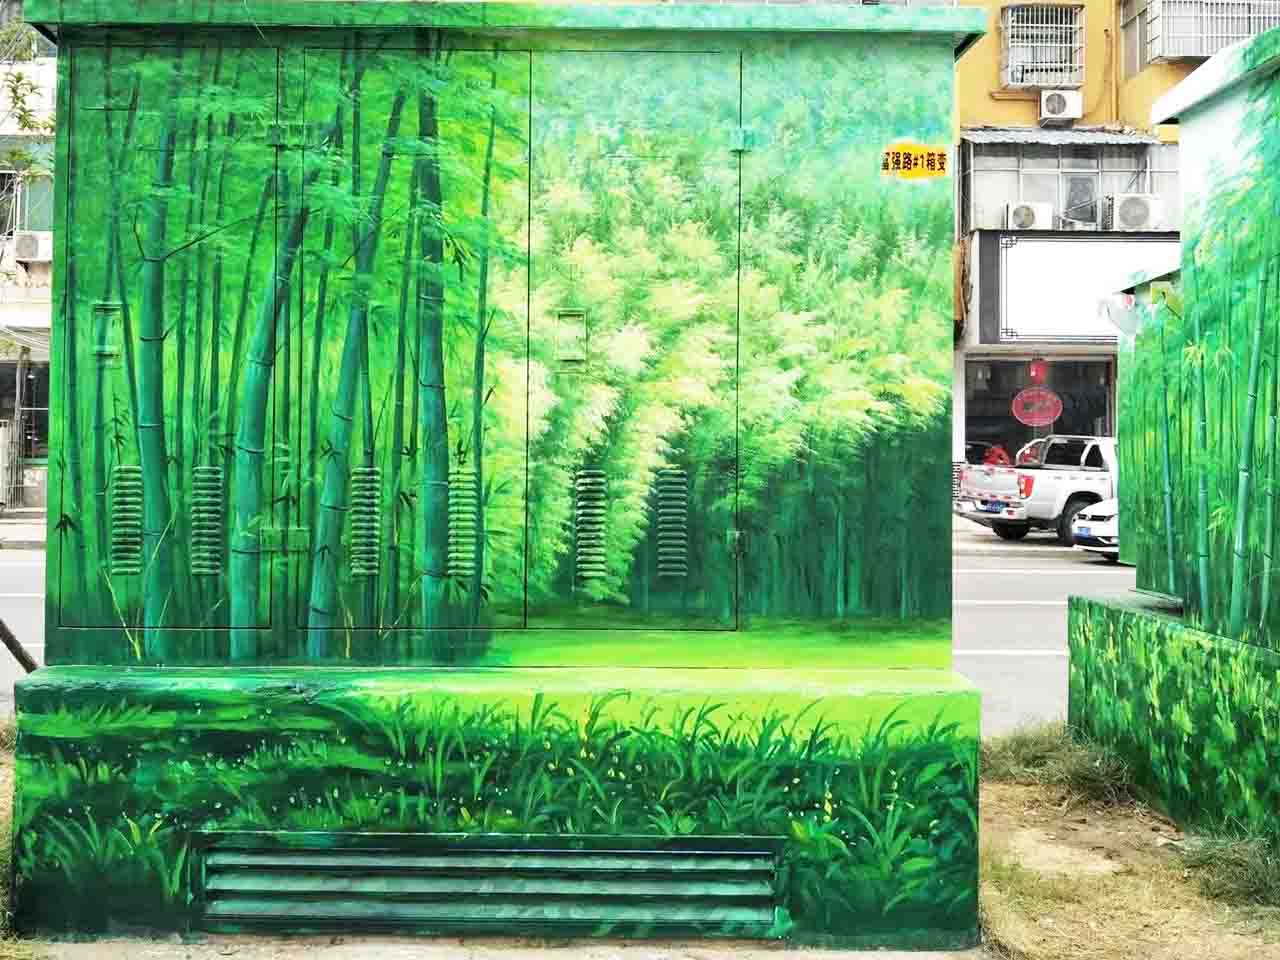 市政景区街道配变电箱写实竹林风景创意乡村墙绘壁画彩绘涂鸦手绘成都澜泉文化